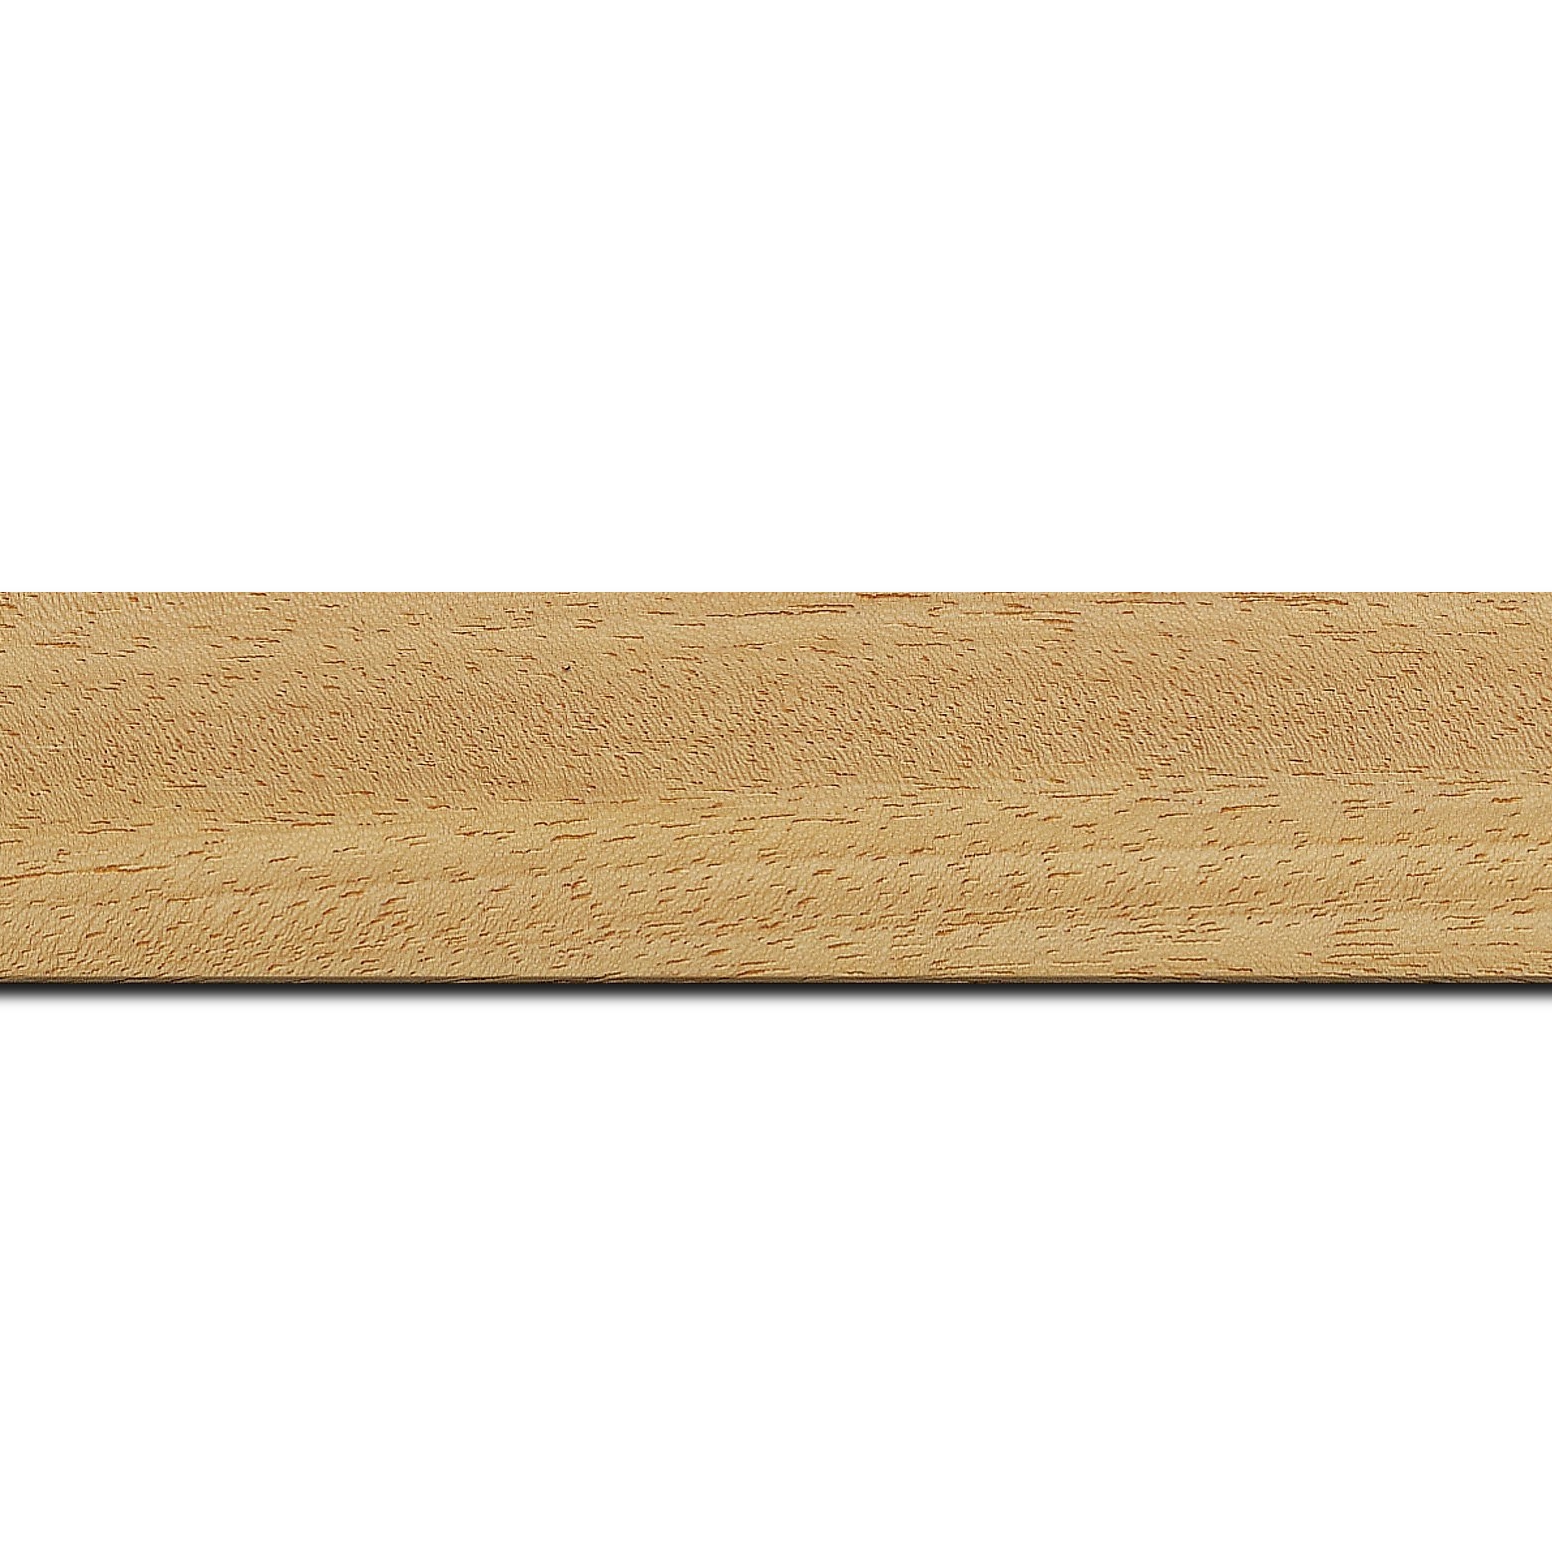 Pack par 12m, bois profil plat largeur 3.8cm ayous massif naturel (sans vernis,peut être peint...)(longueur baguette pouvant varier entre 2.40m et 3m selon arrivage des bois)